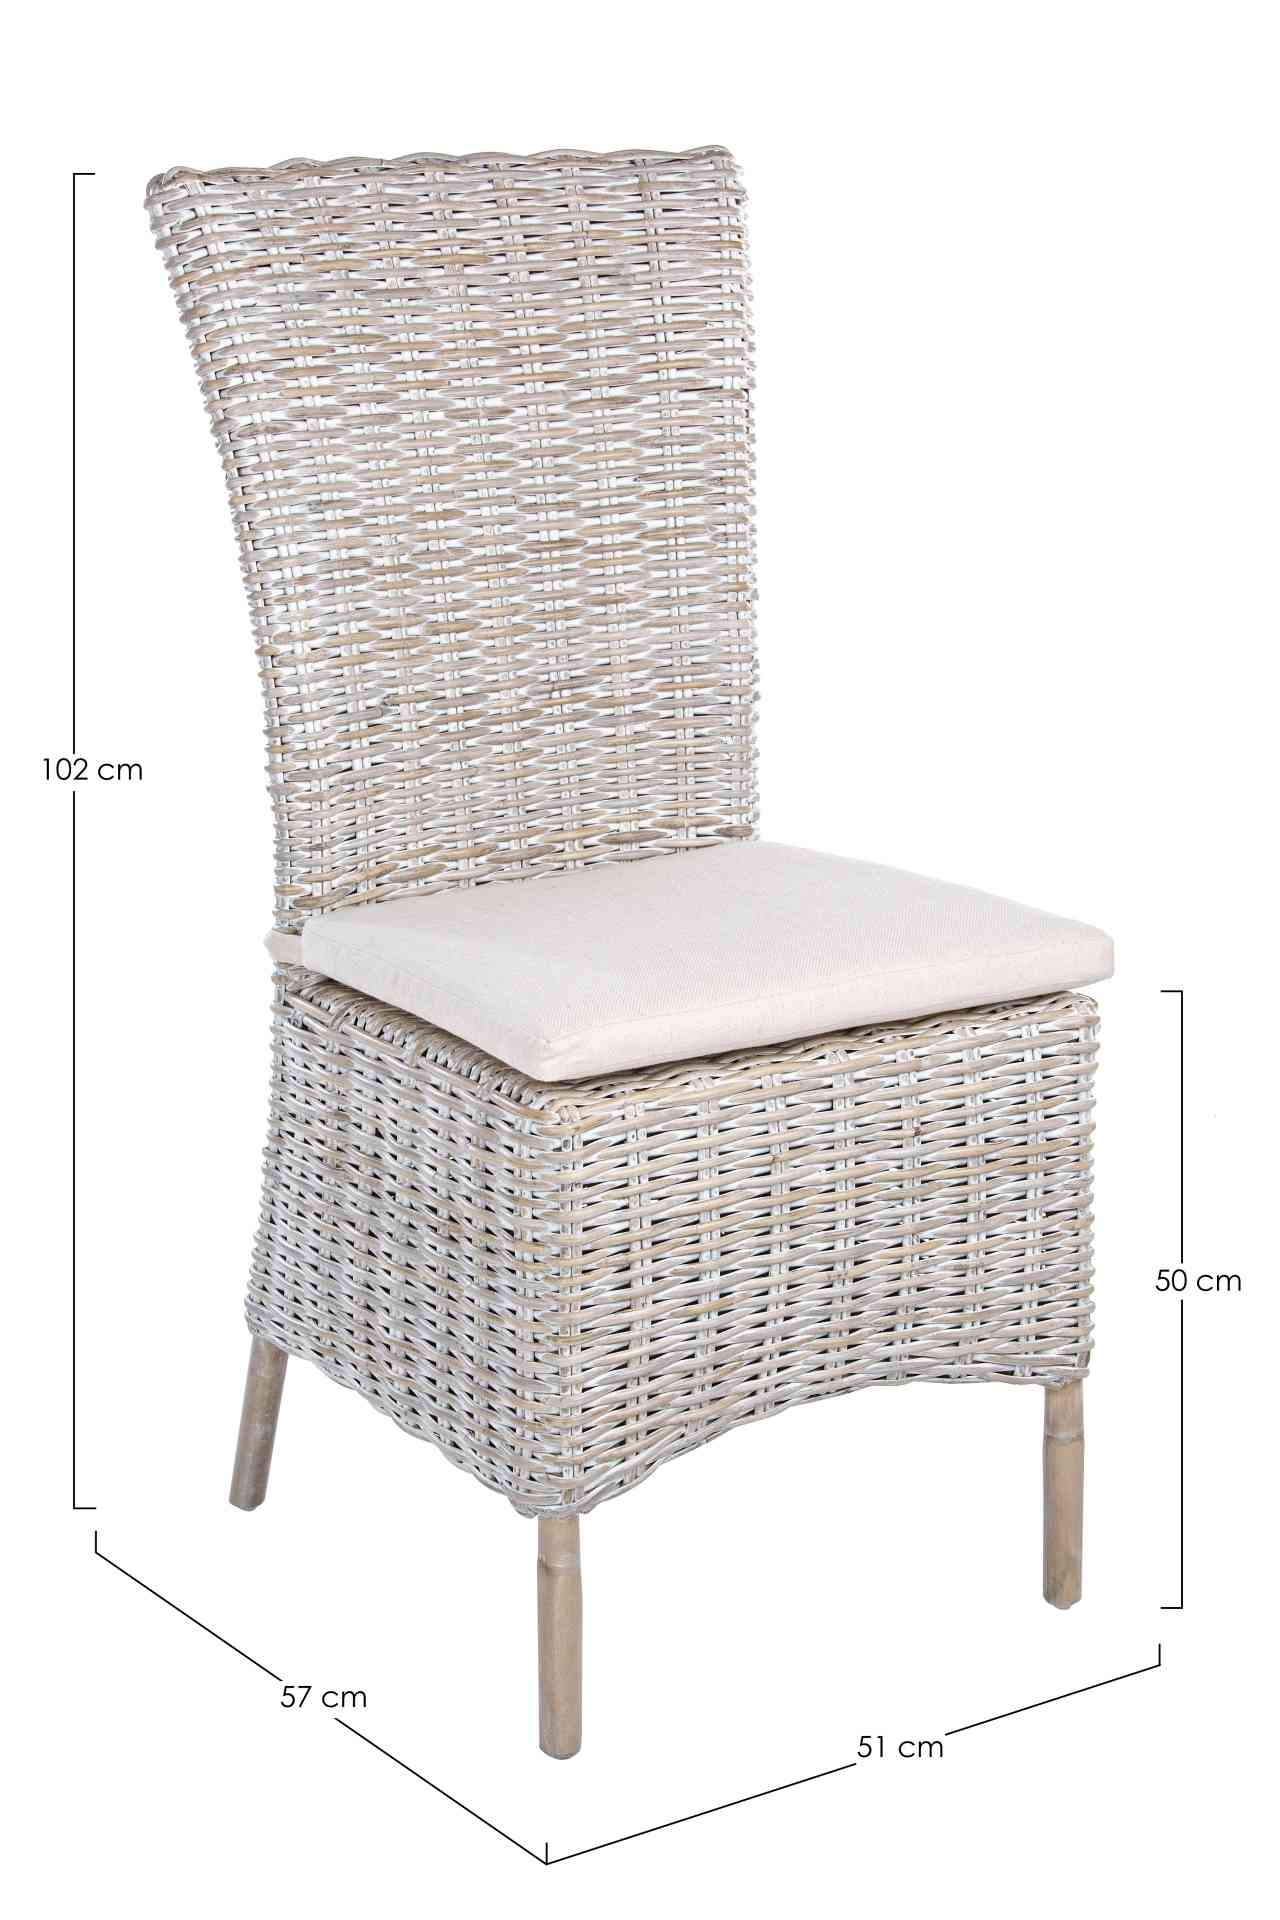 Der Stuhl Isla überzeugt mit seinem klassischem Design. Gefertigt wurde der Stuhl aus Rattan und Kabugeflecht, welches einen natürlichen Farbton besitzt. Der Stuhl wird inklusive Sitzkissen aus Leinen geliefert. Die Sitzhöhe beträgt 50 cm.